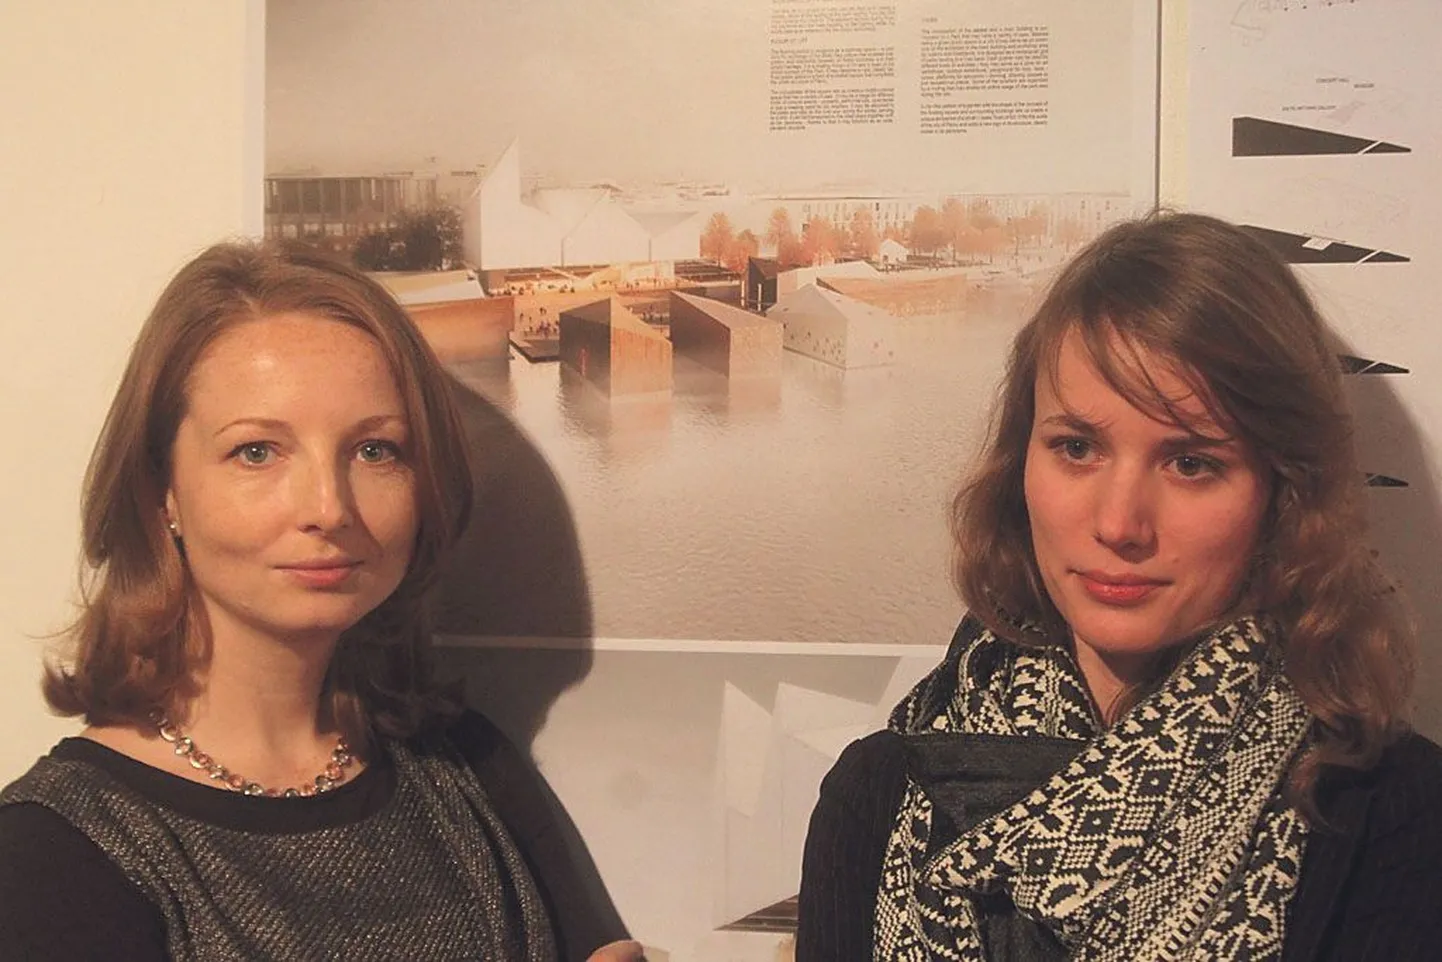 Rahvusvahelise arhitektuurivõistluse võitjate Marta Sekulska-Wronska (vasakul) ja Malgorzata Dembowska taga seinal paistab nende võidutöö, mis peaks saama aluseks Pärnusse Läänemere kunstipargi püstitamisel.